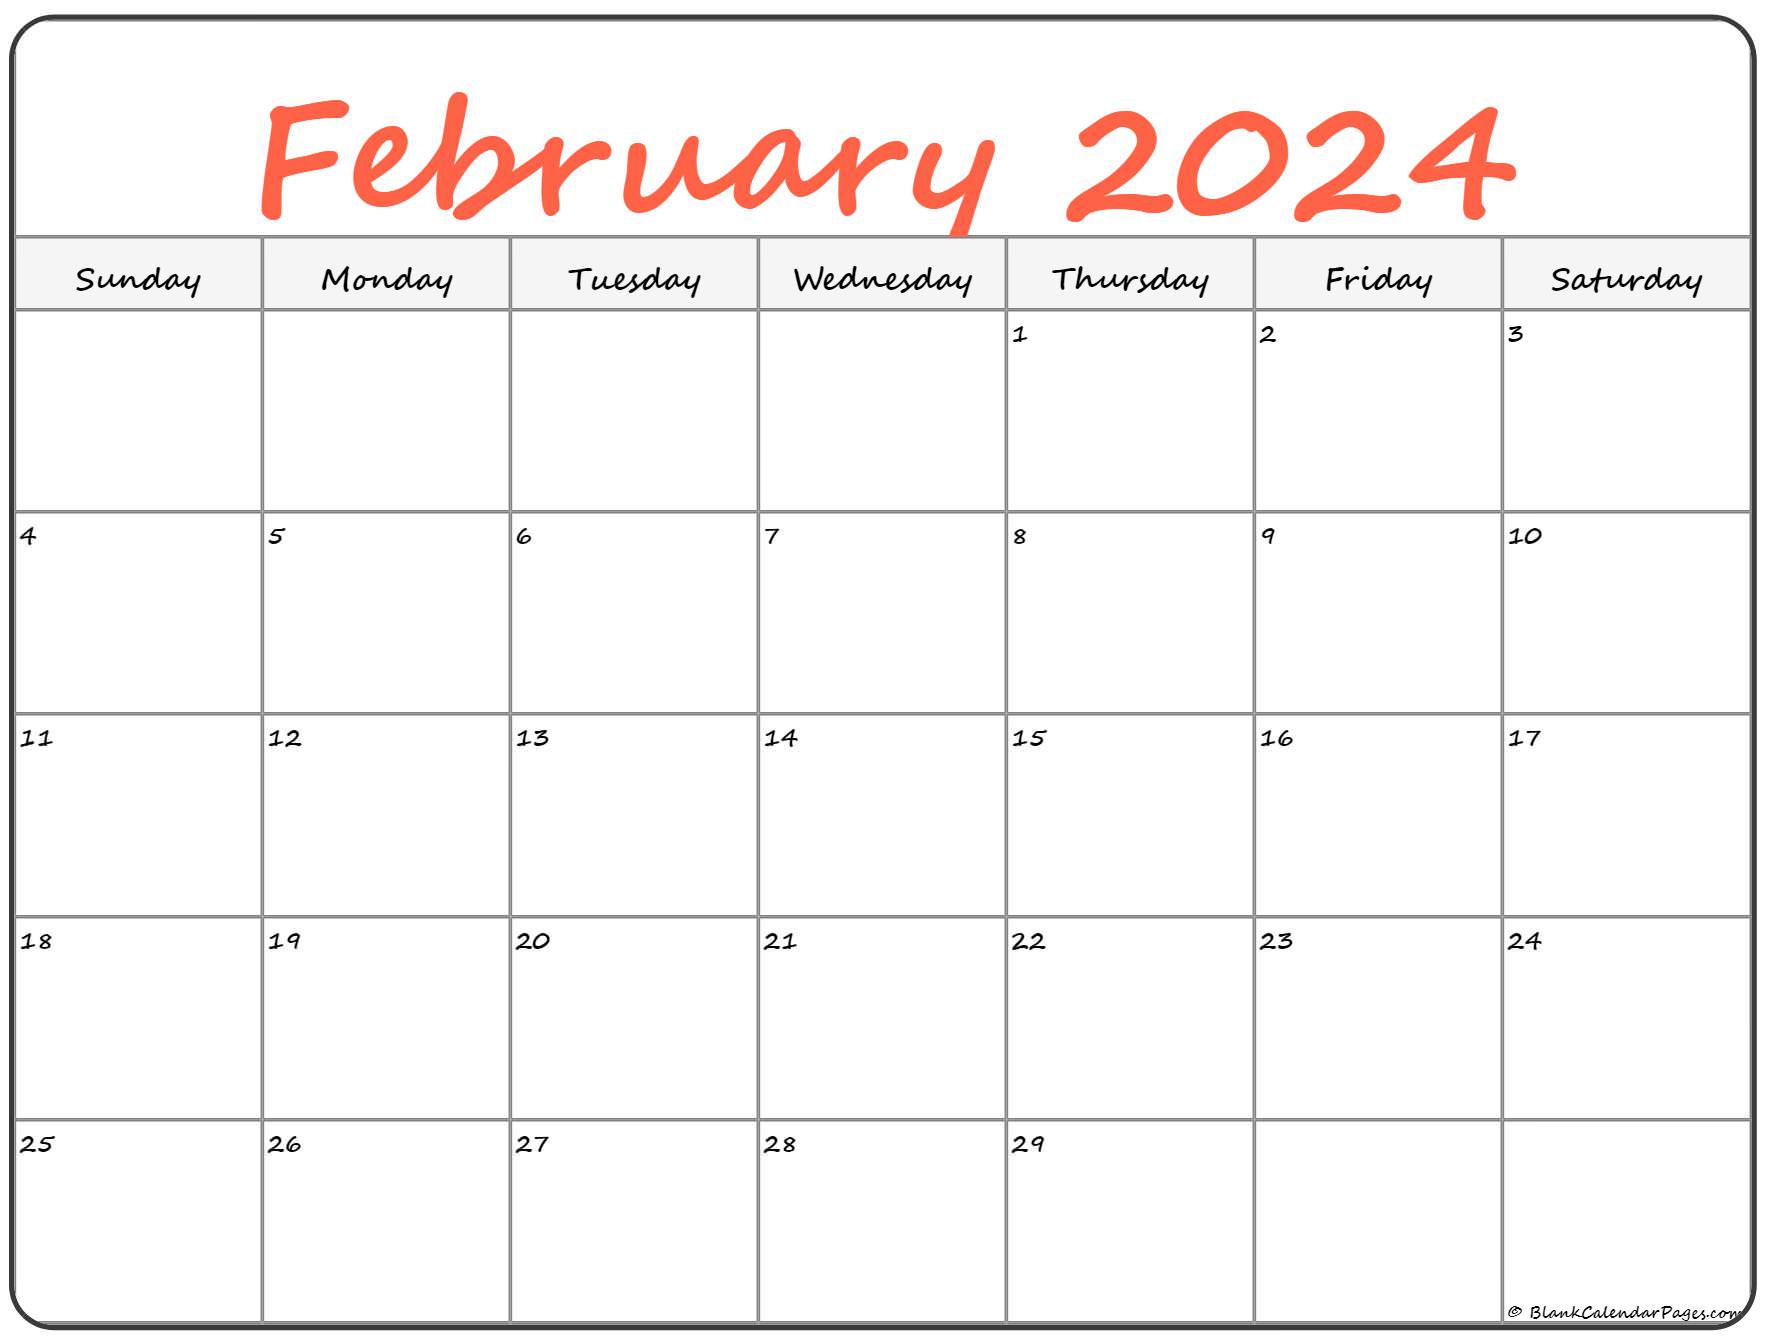 February 2023 Calendar Free Printable Calendar February 2023 Calendar 